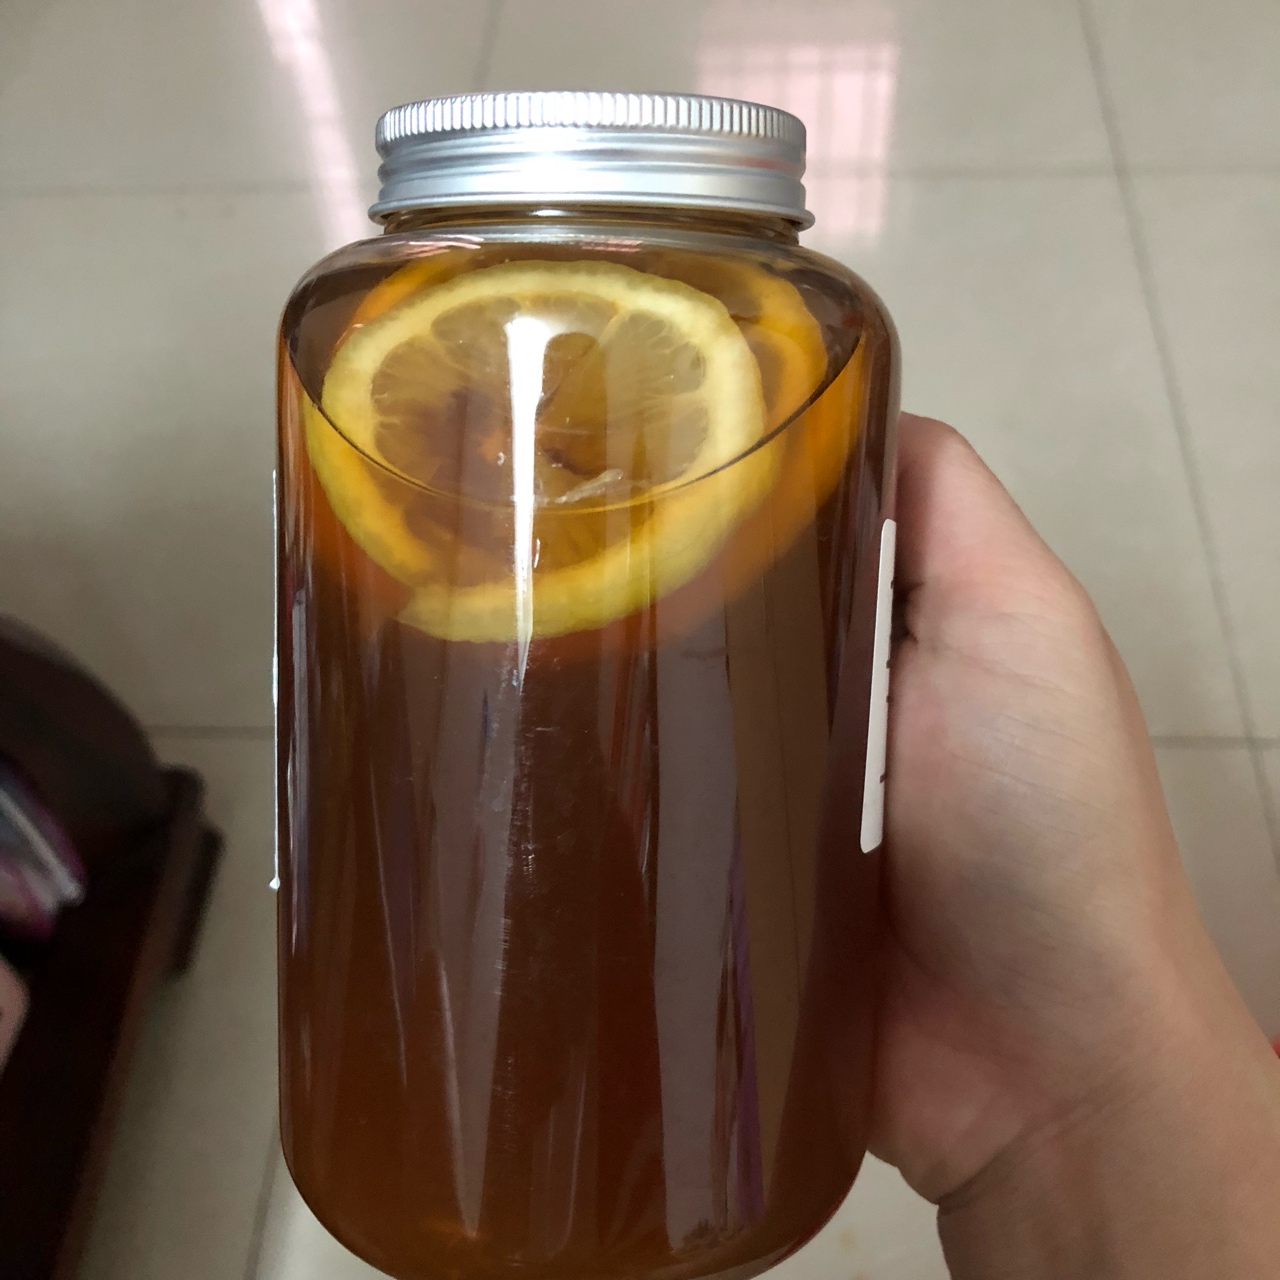 柠檬蜂蜜红茶